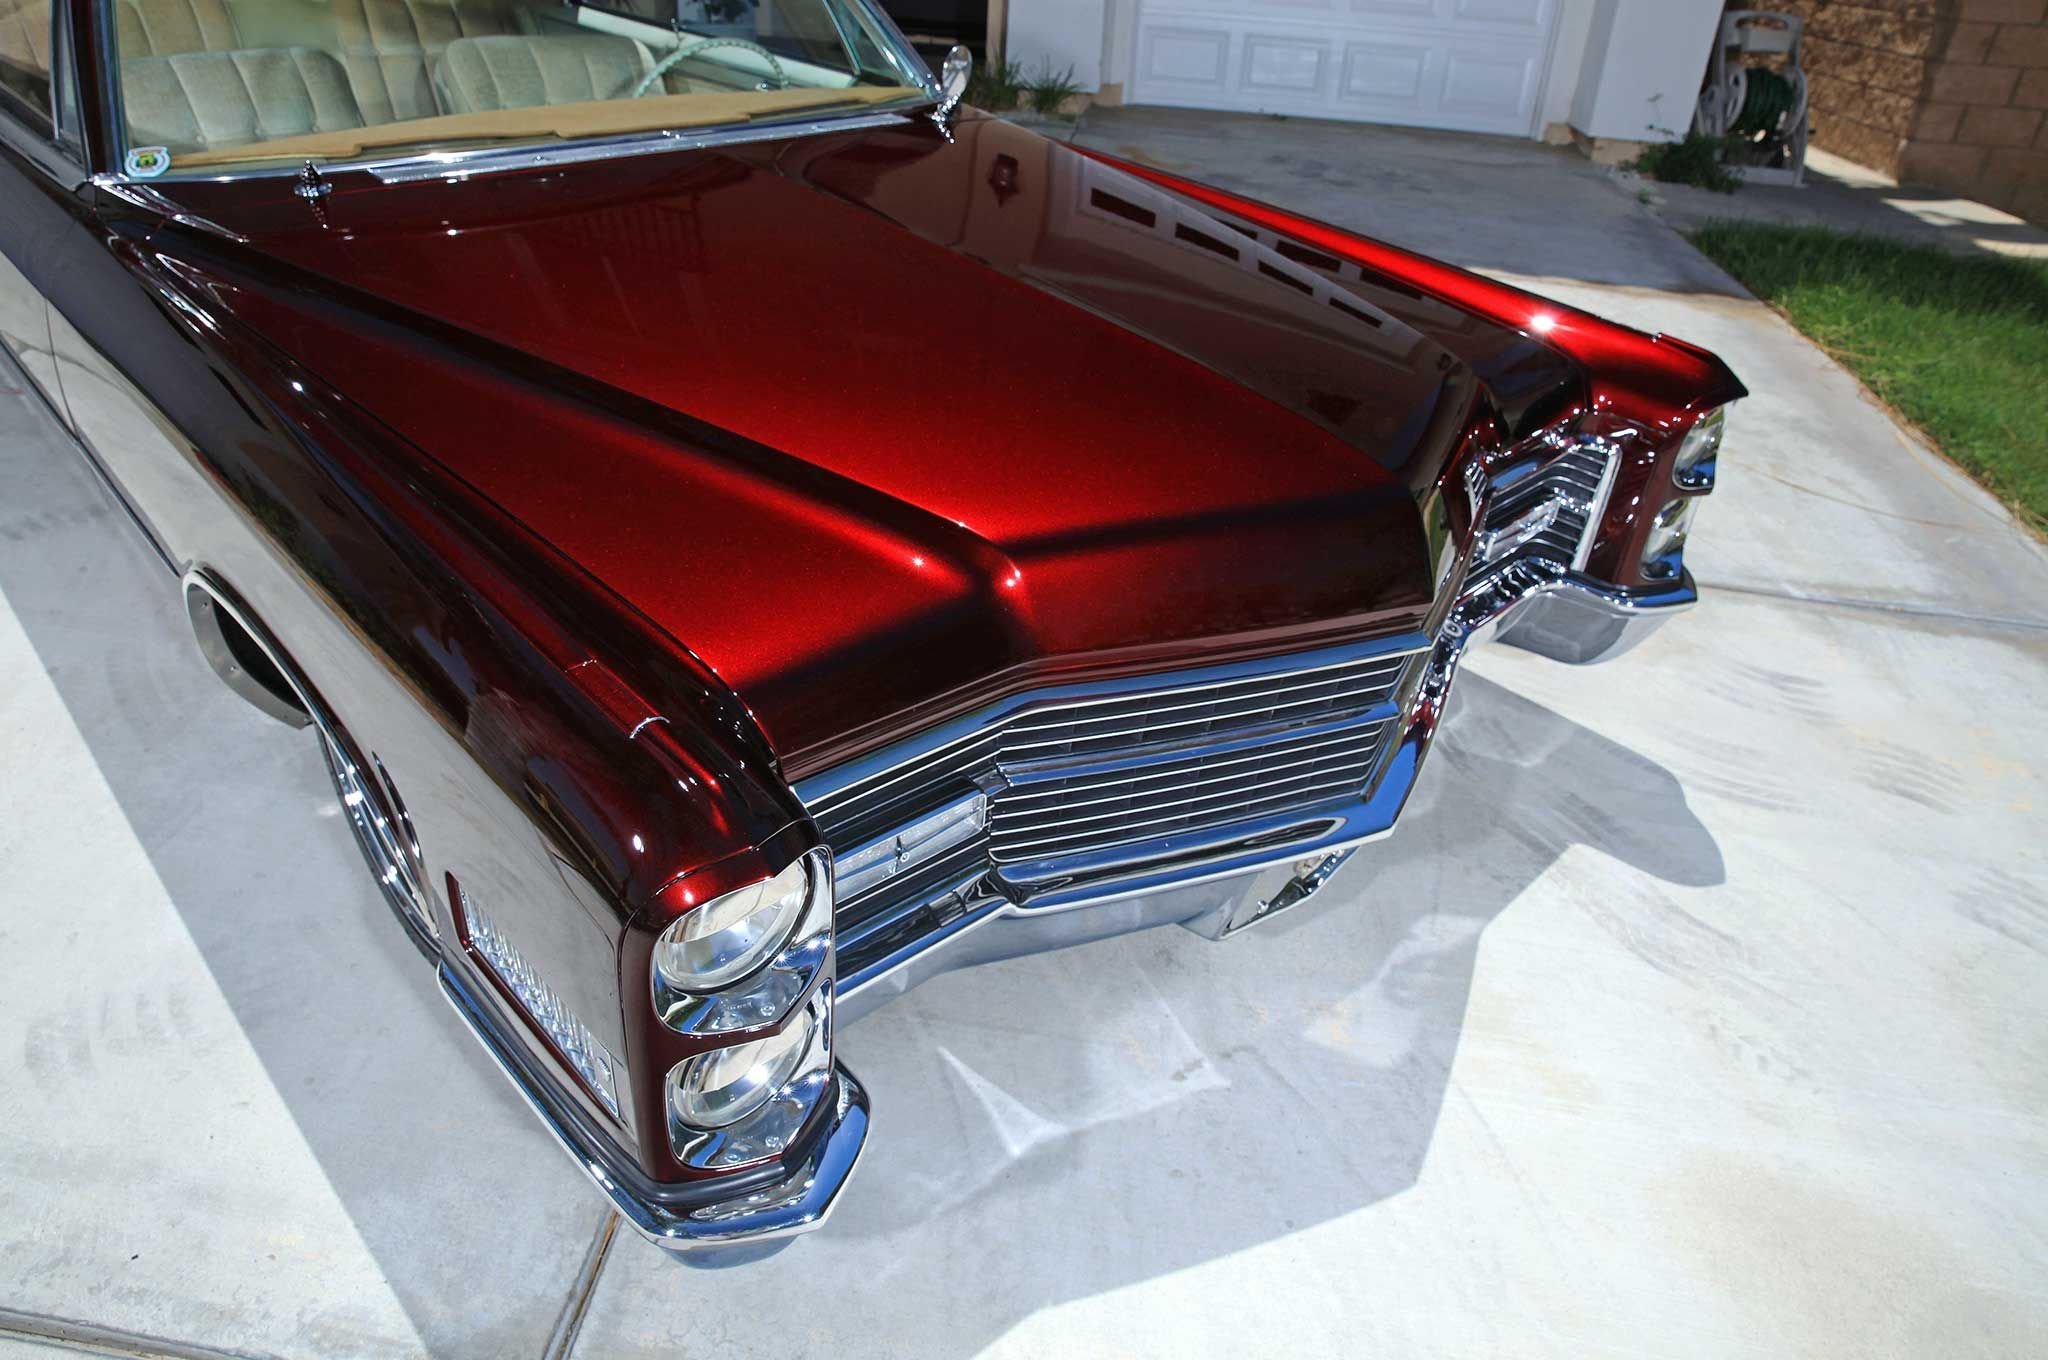 1966 Cadillac Deville лоурайдер. Ксералик Кэнди. Кадиллак Кэнди. Шевроле Импала цвет Кэнди.